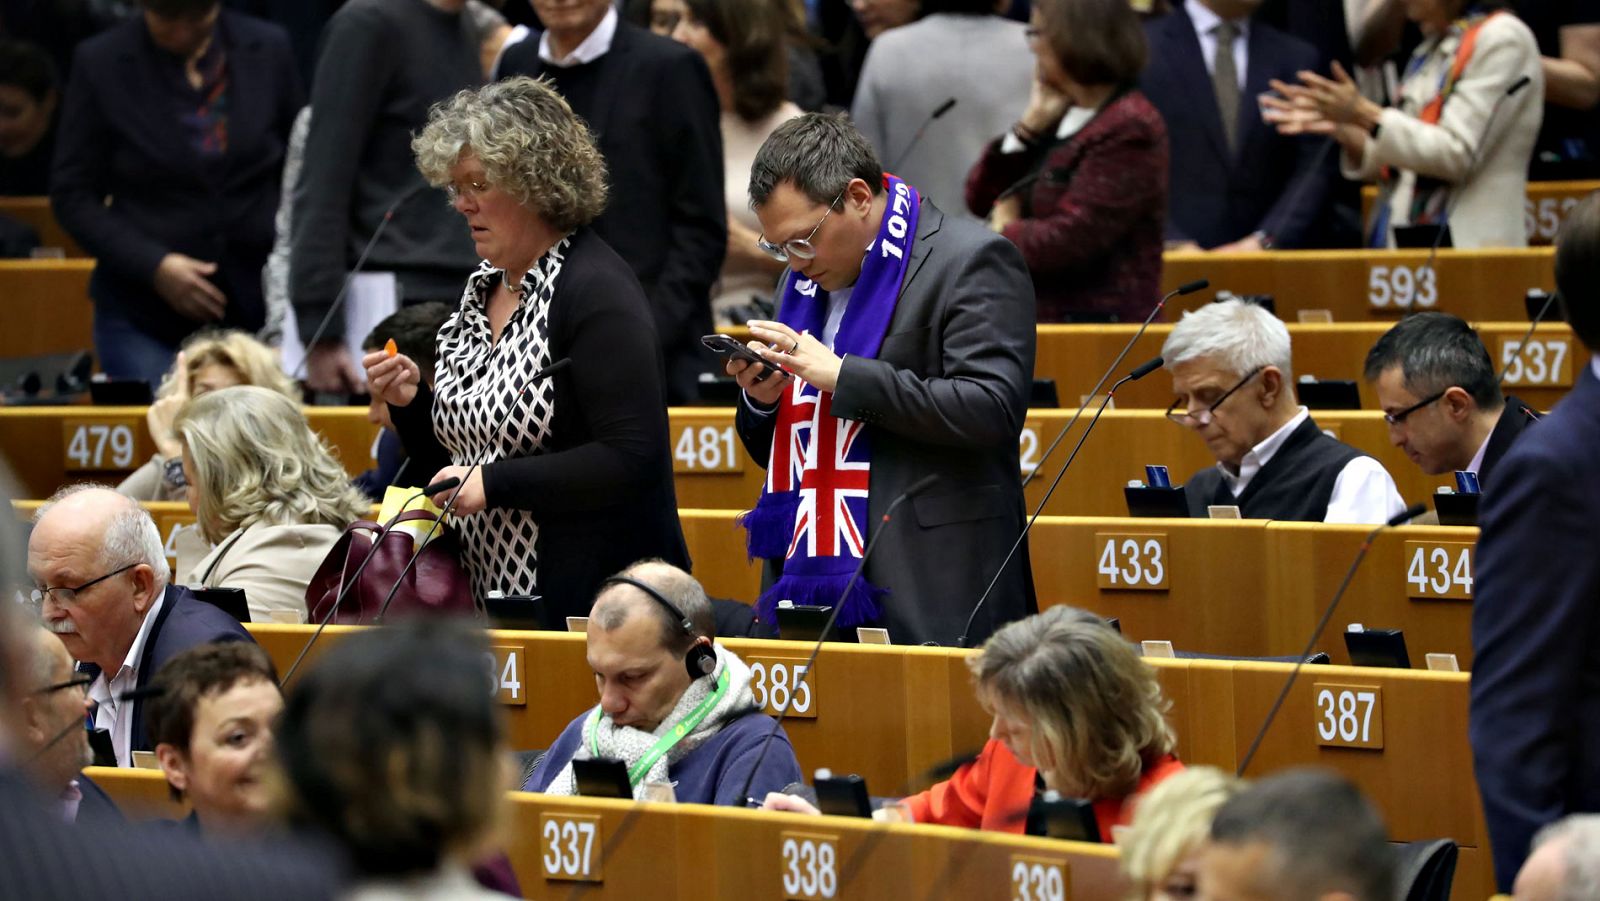 Brexit - Los eurodiputados británicos se despiden del Parlamento Europeo ante el 'Brexit'